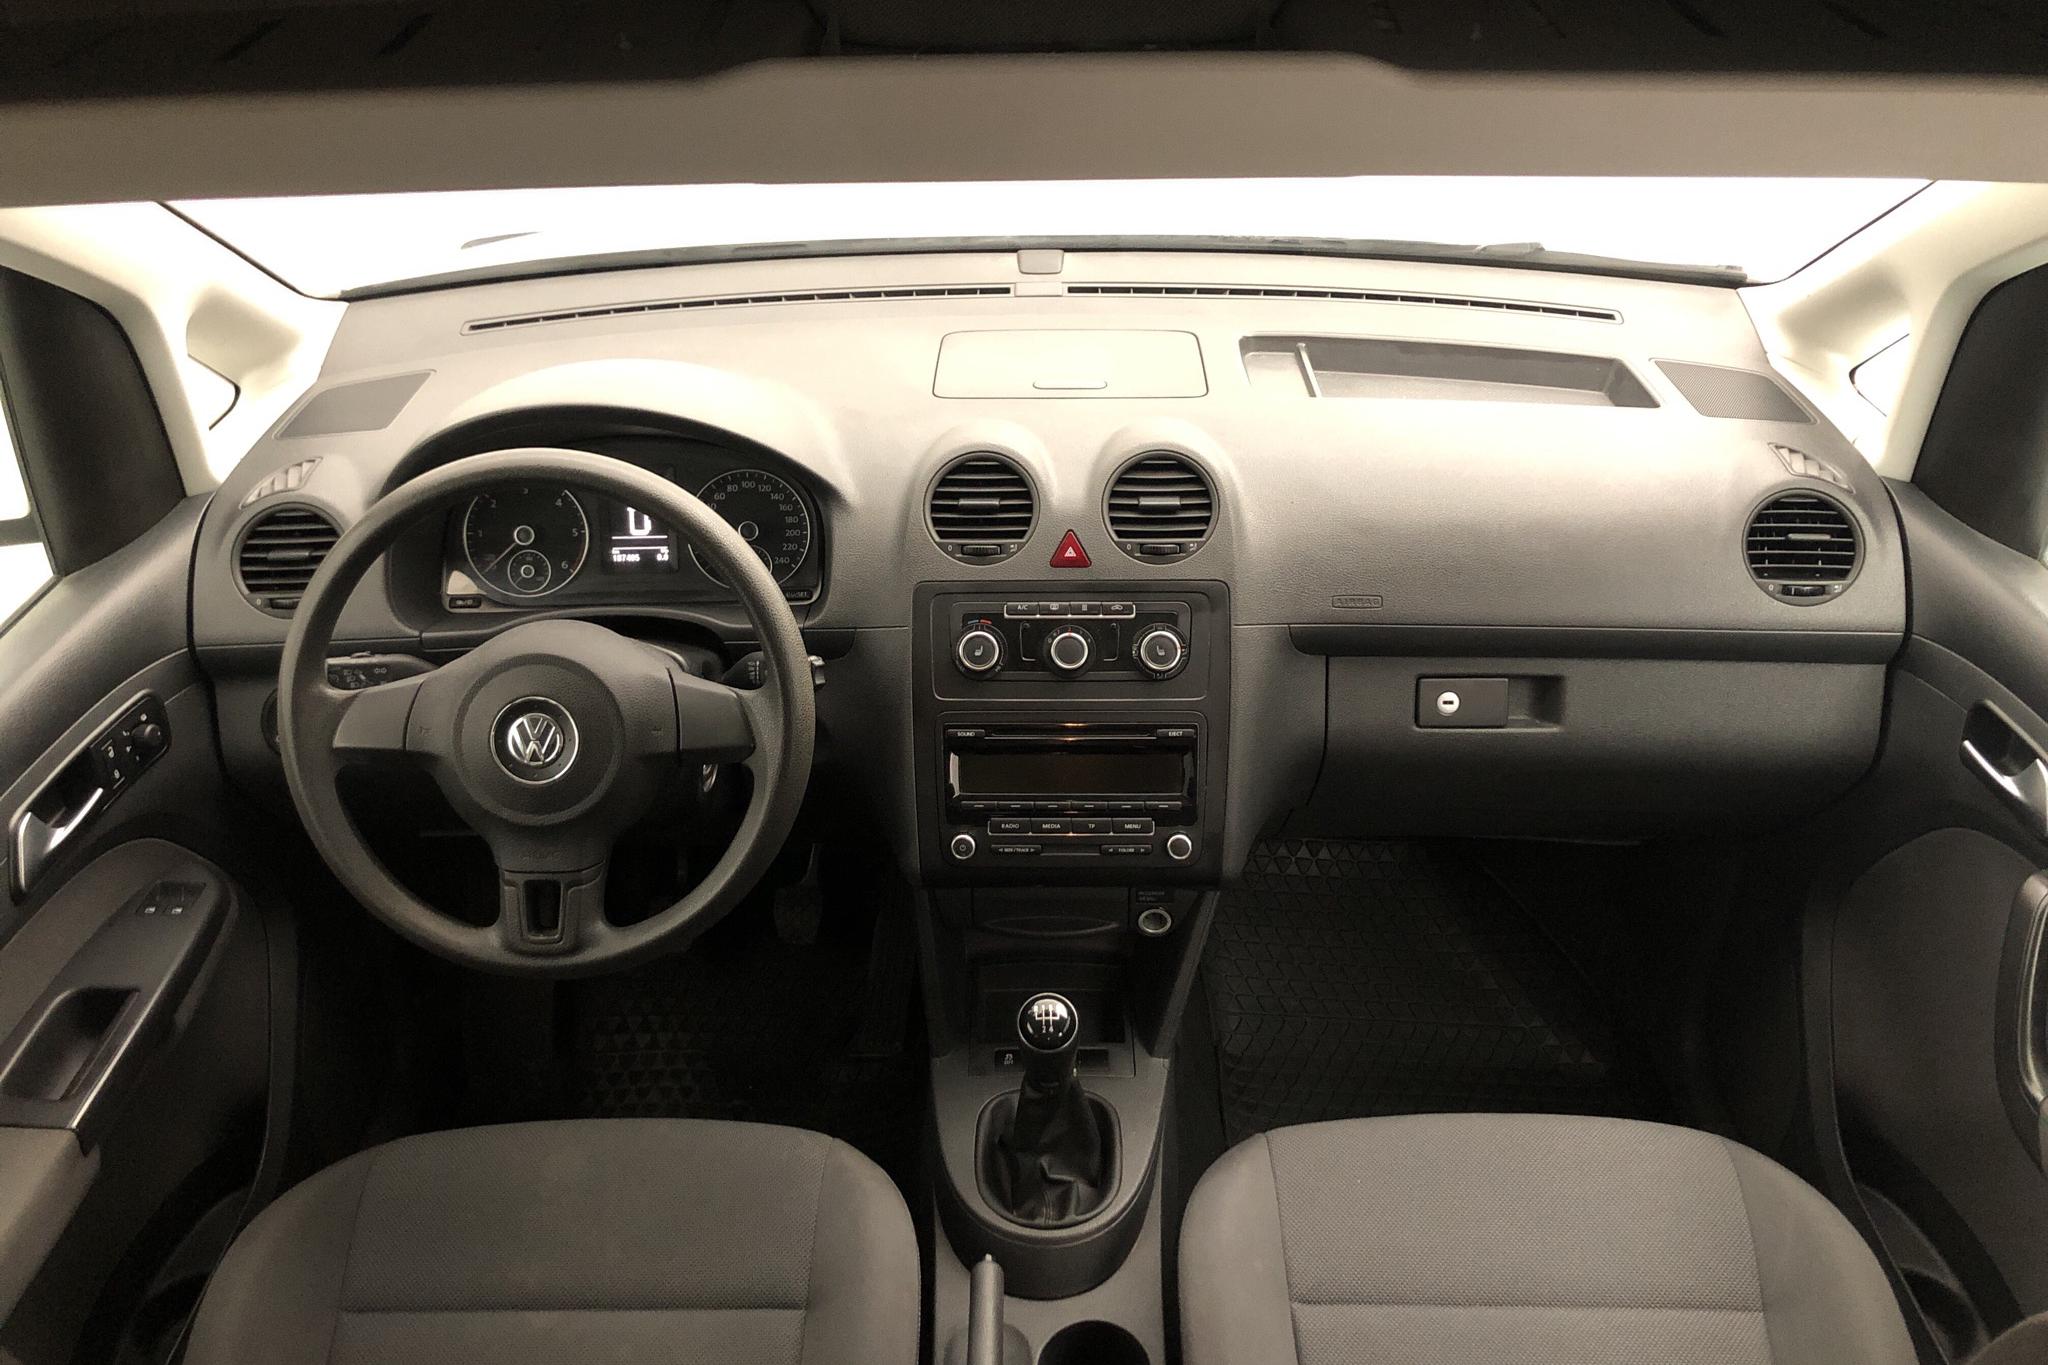 VW Caddy MPV Maxi 1.6 TDI (102hk) - 187 400 km - Manual - white - 2015